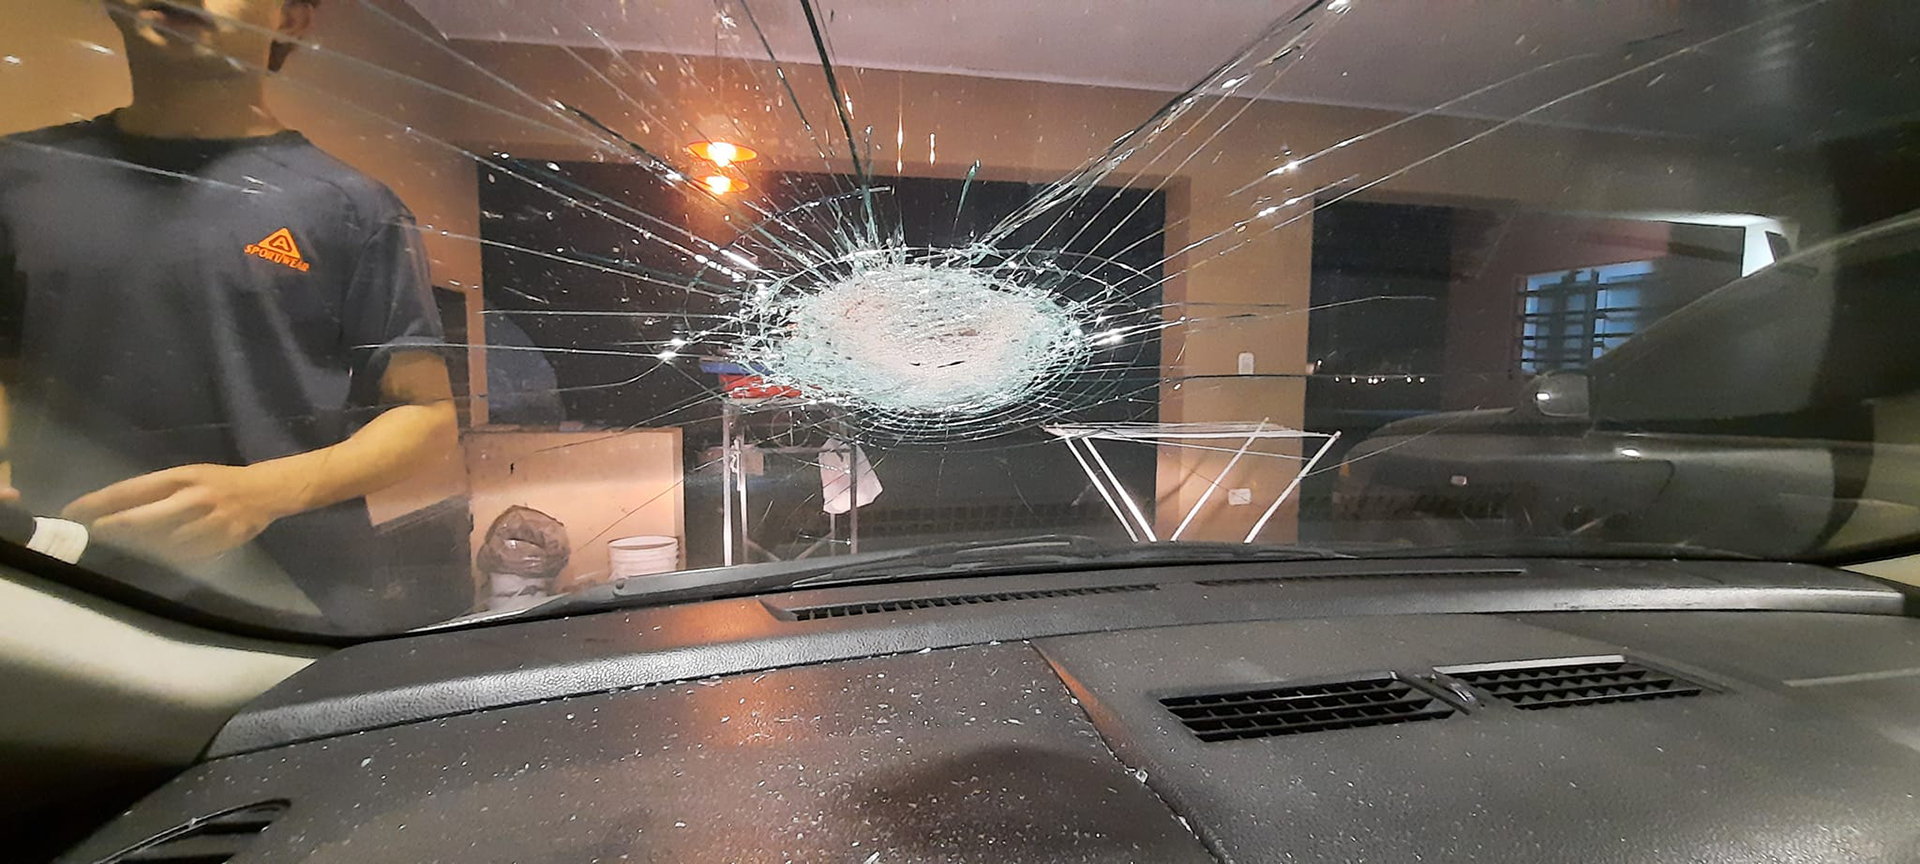 Siguen los ataques a piedrazos contra automovilistas en las rutas: vecinos de Luján reclaman medidas de seguridad 